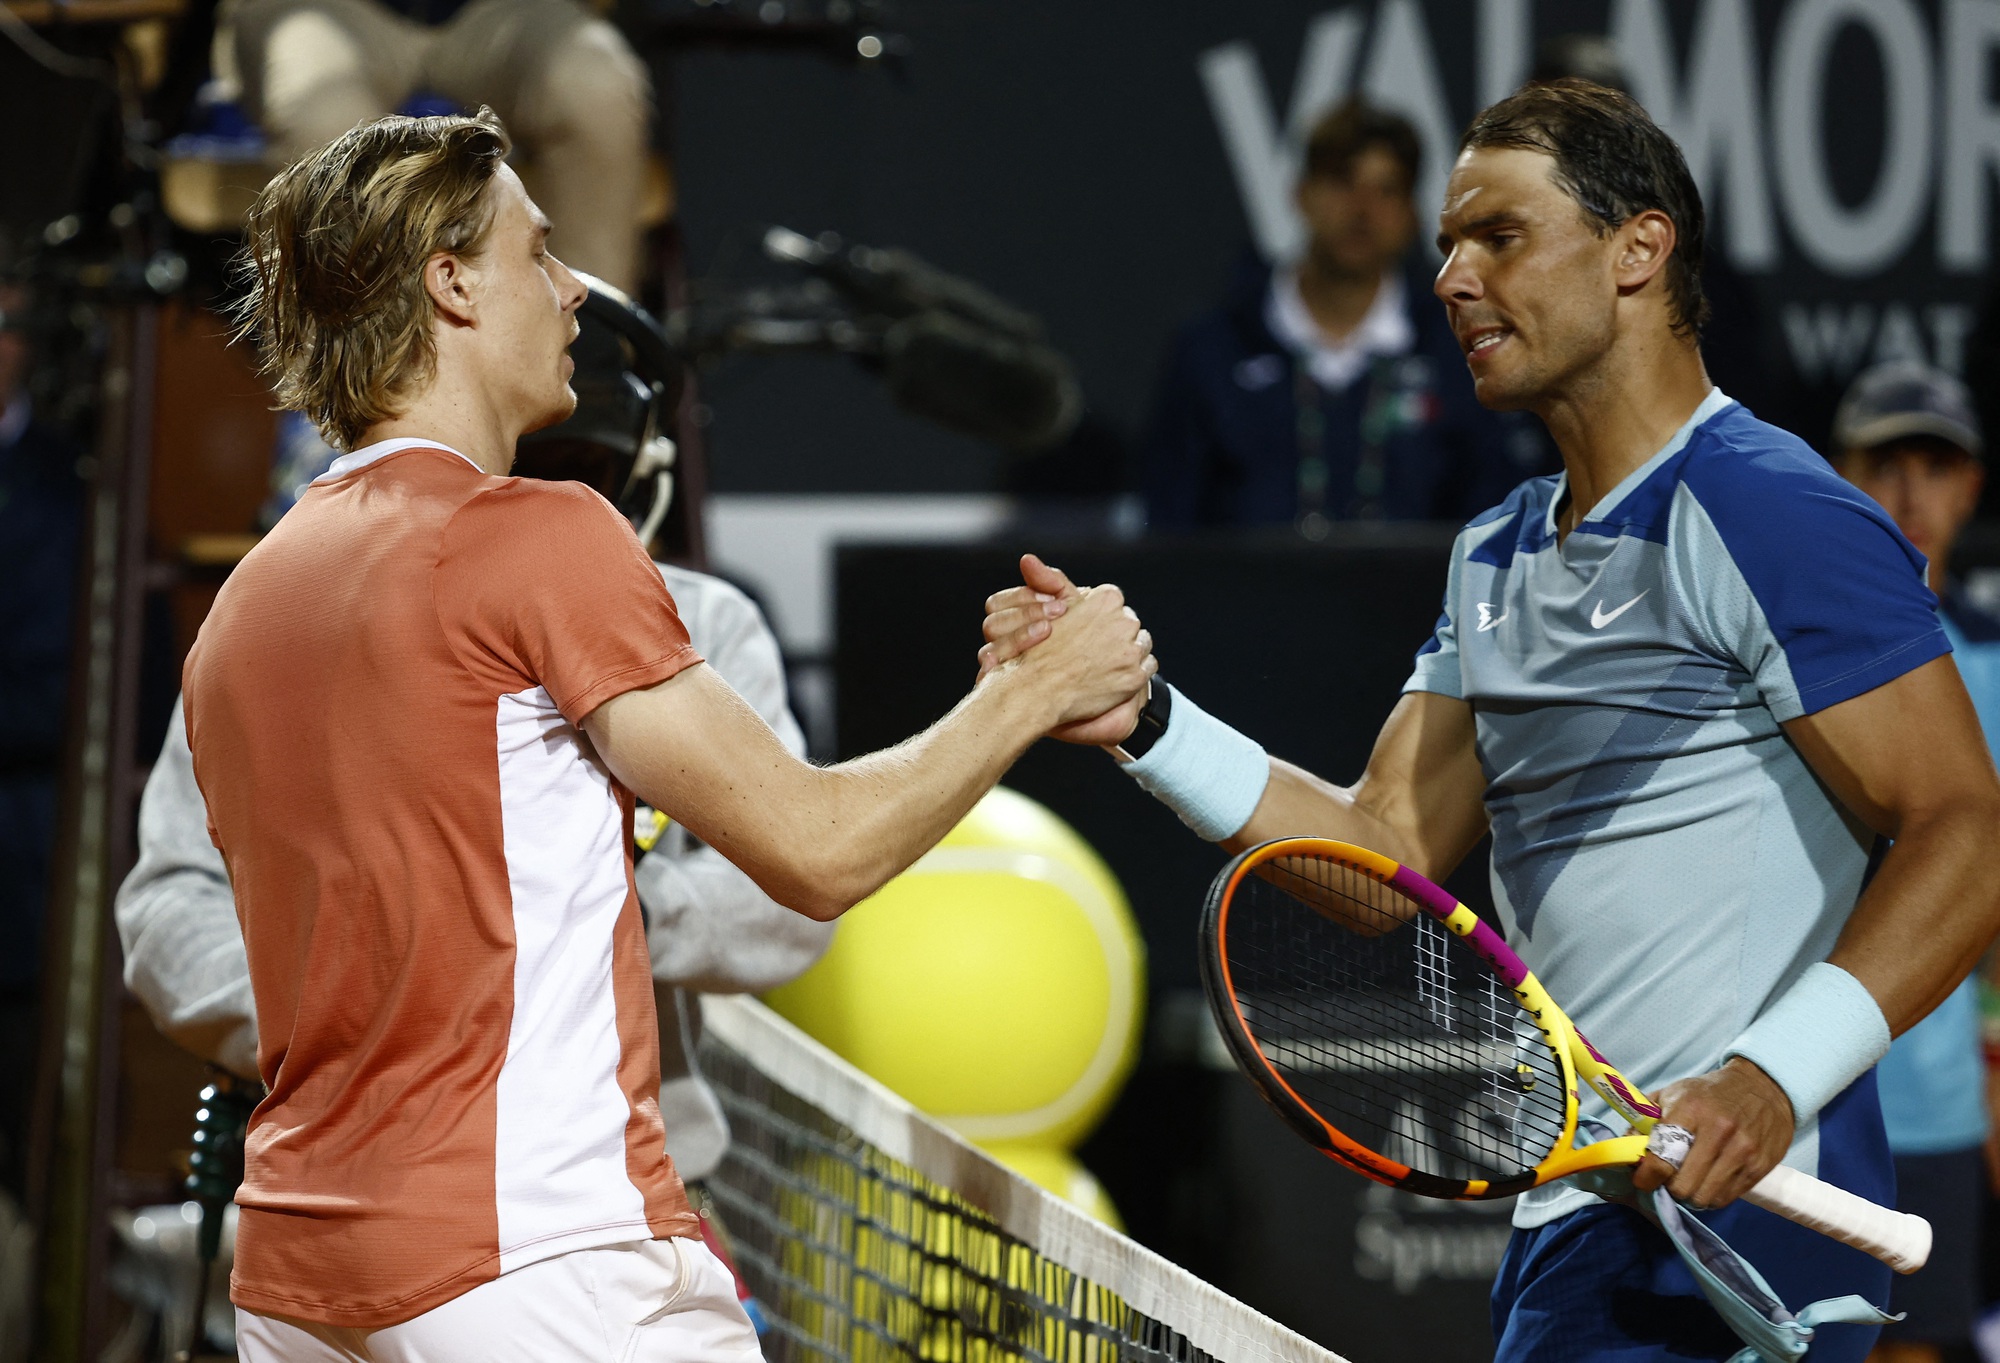 Nadal tiếp tục thua trận, Djokovic dễ dàng vào tứ kết Rome Masters 2022 - Ảnh 1.